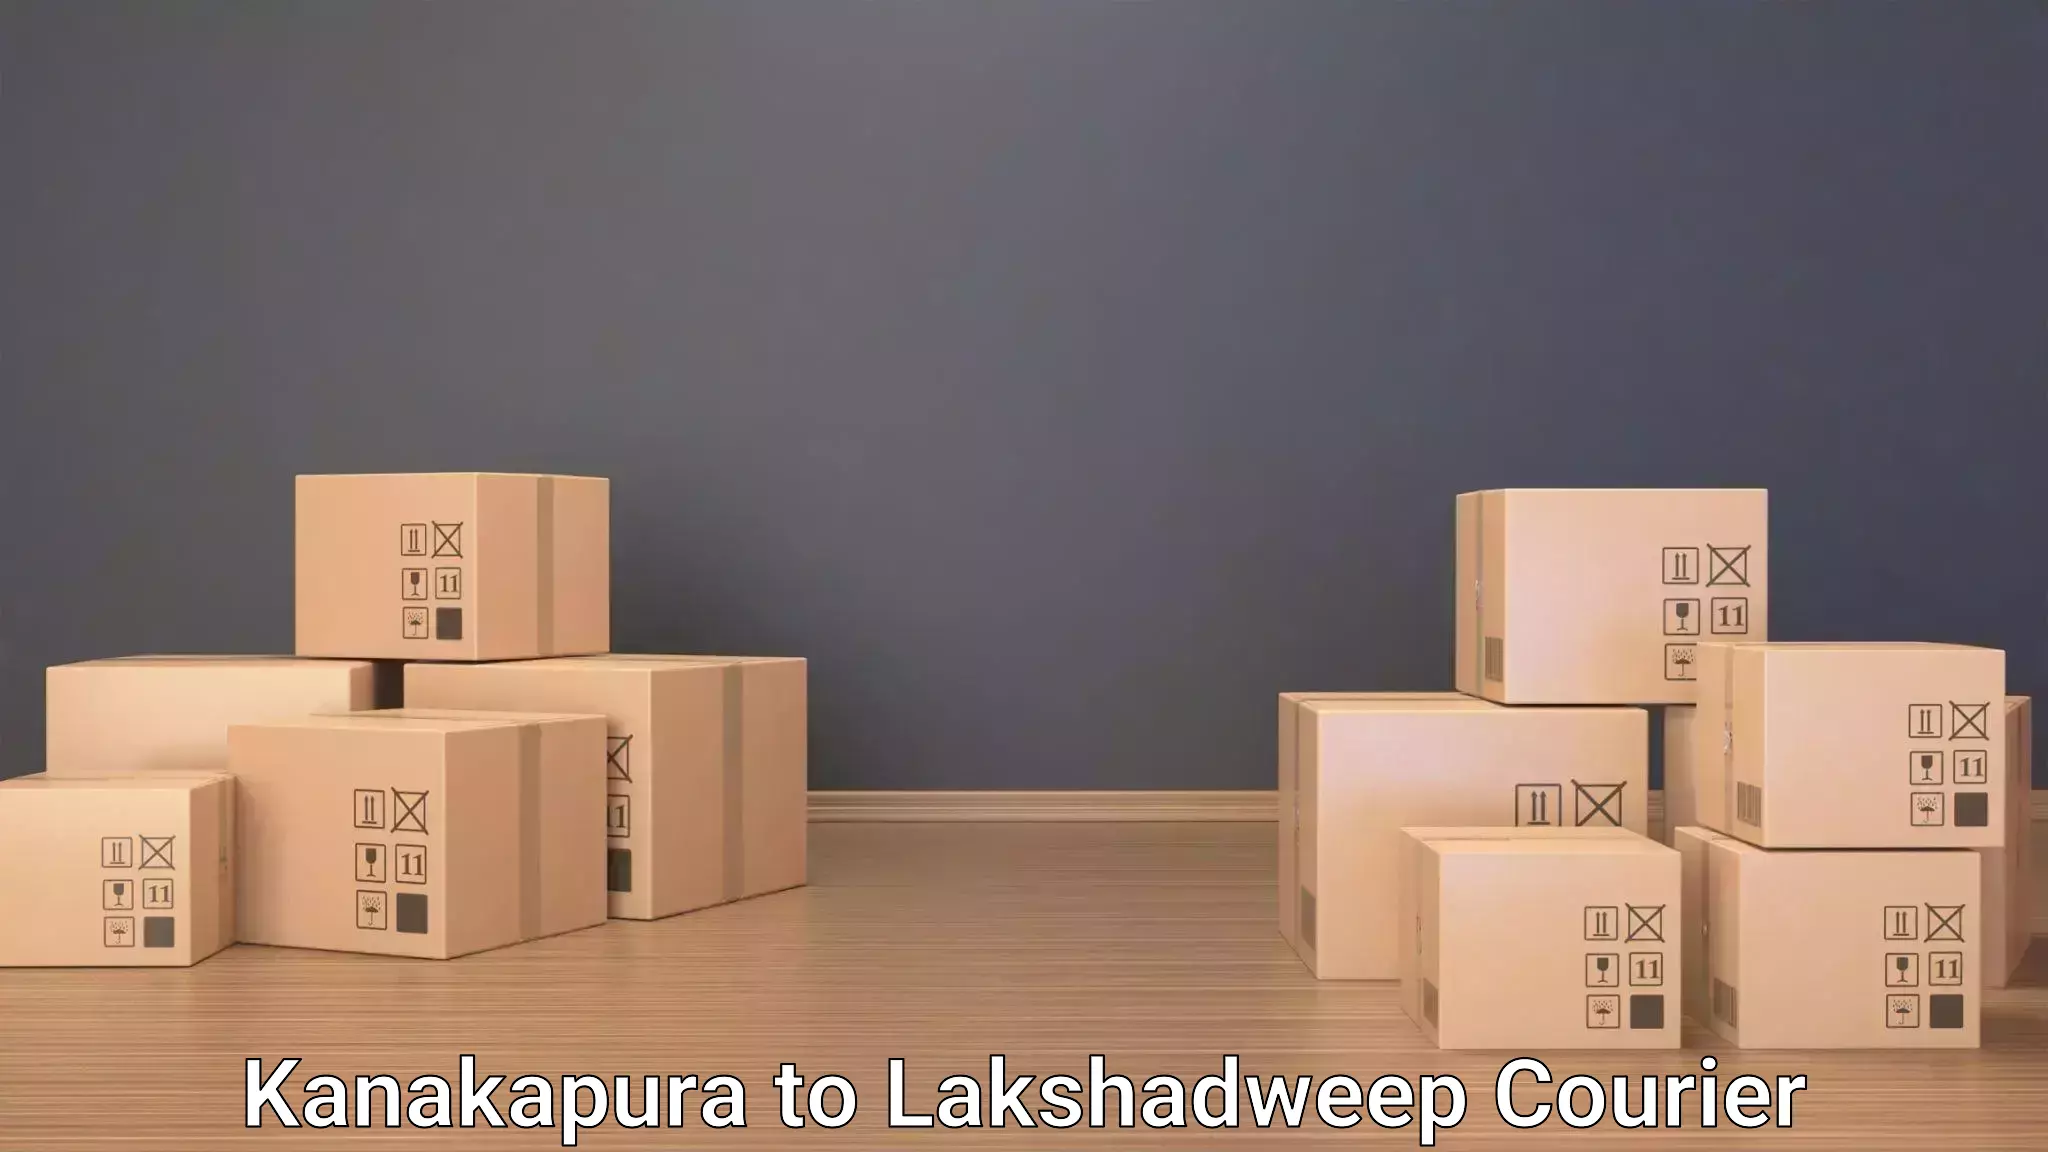 Baggage handling services Kanakapura to Lakshadweep